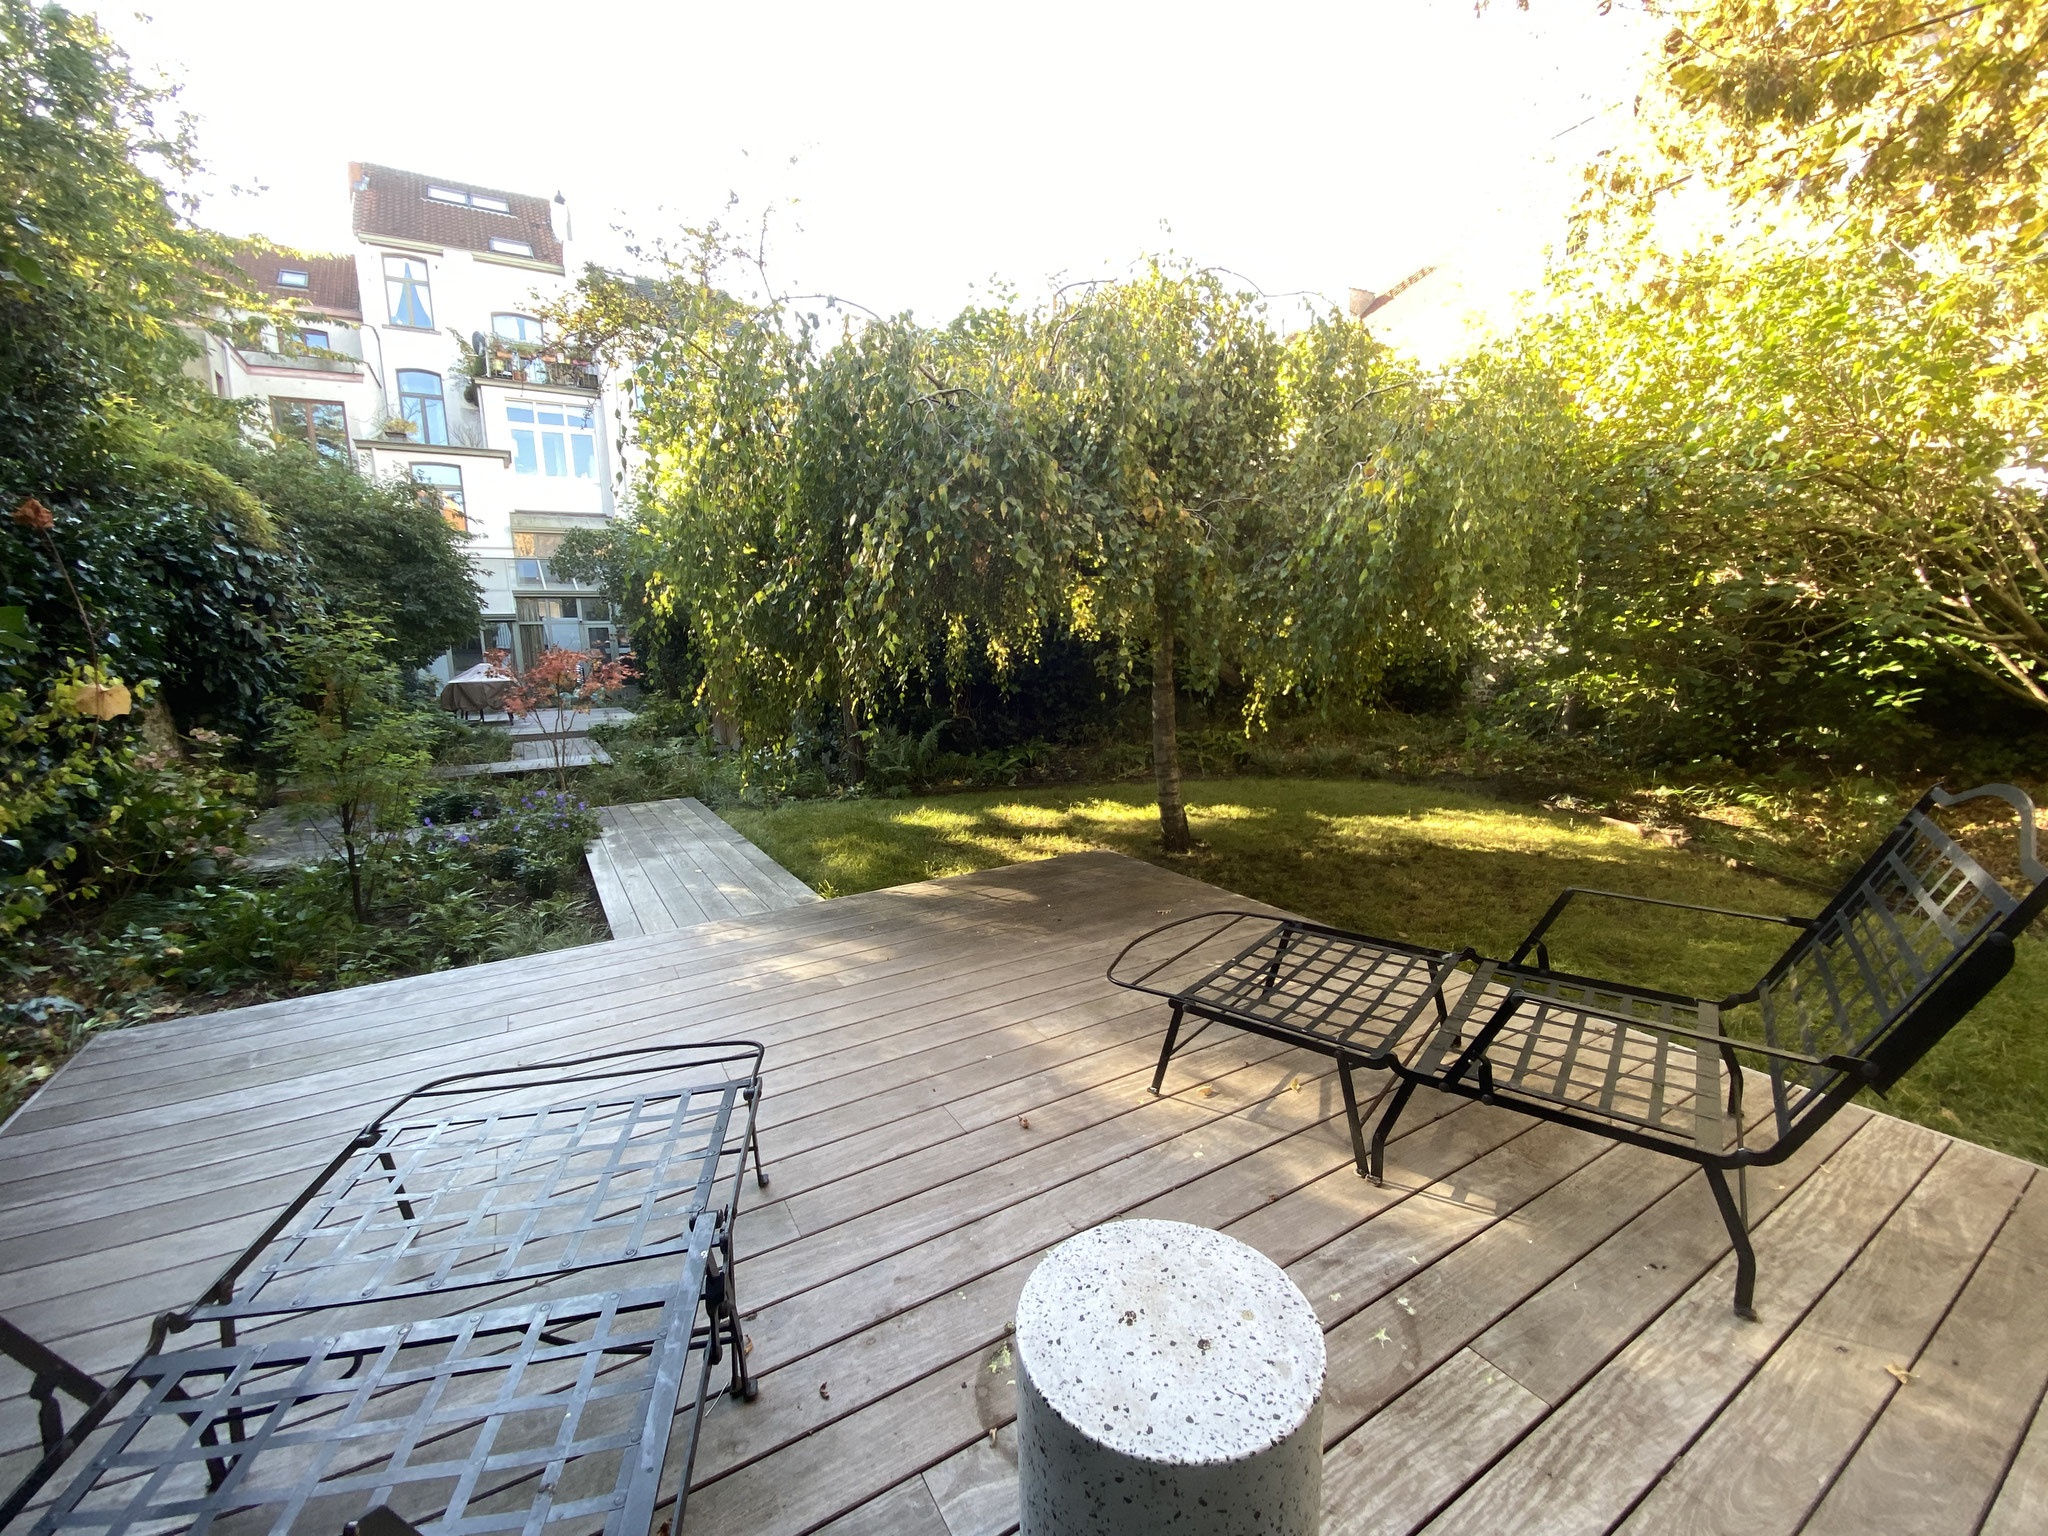 Jardin de ville 250m2 - Jardin contemporain -Terrasse en bois / Bain de soleil - Automne 2021. Aménagement Jardin Bruxelles